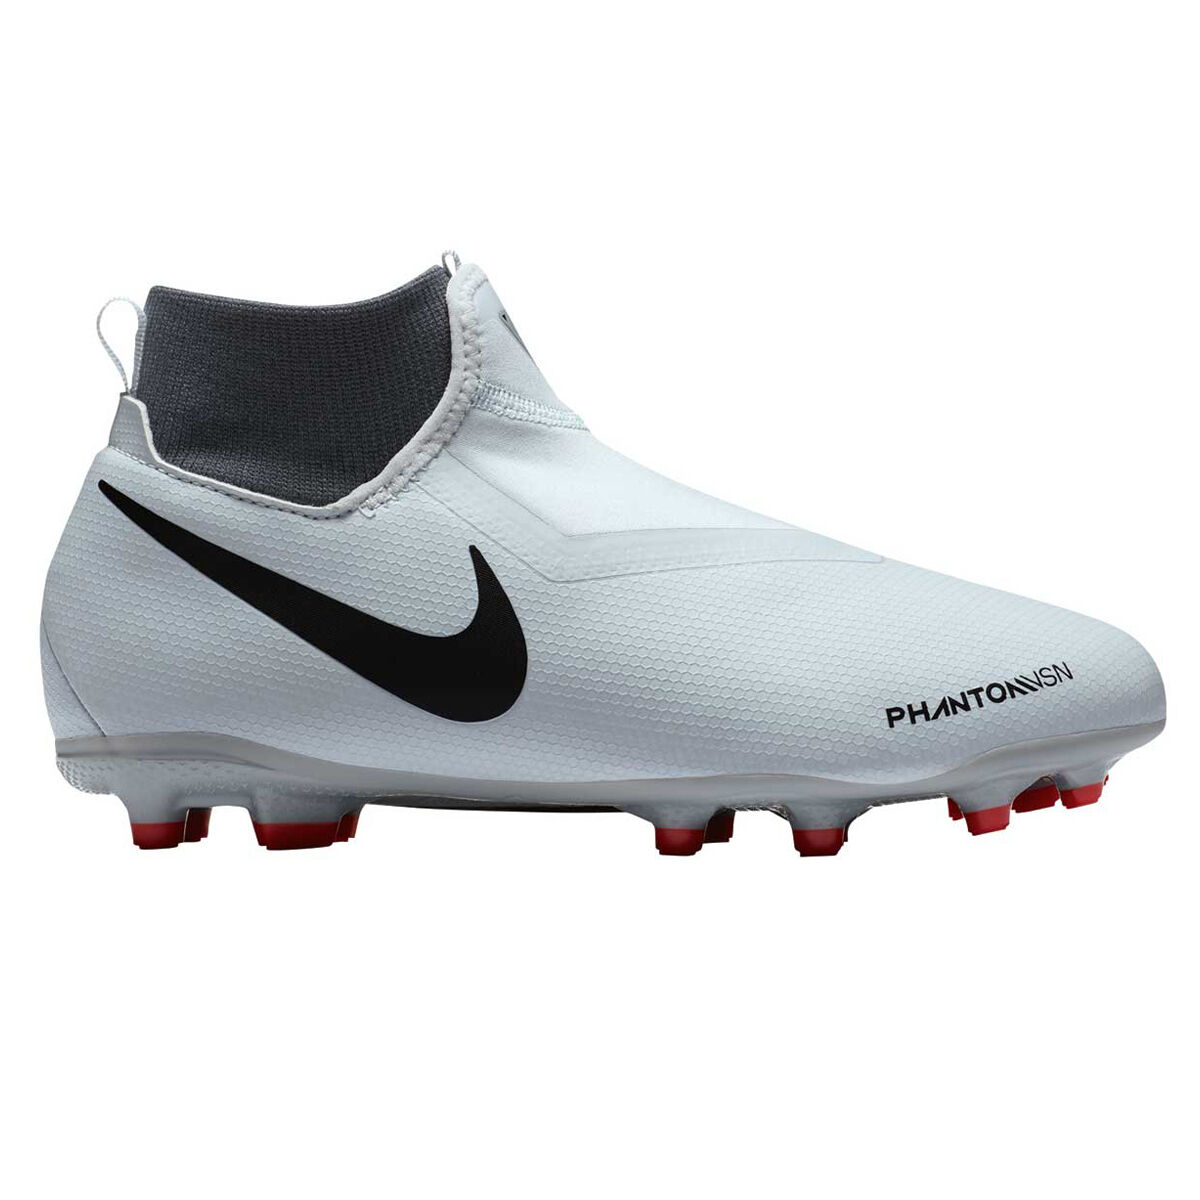 Phantom Vision schoenen en voetbalschoenen. Nike NL